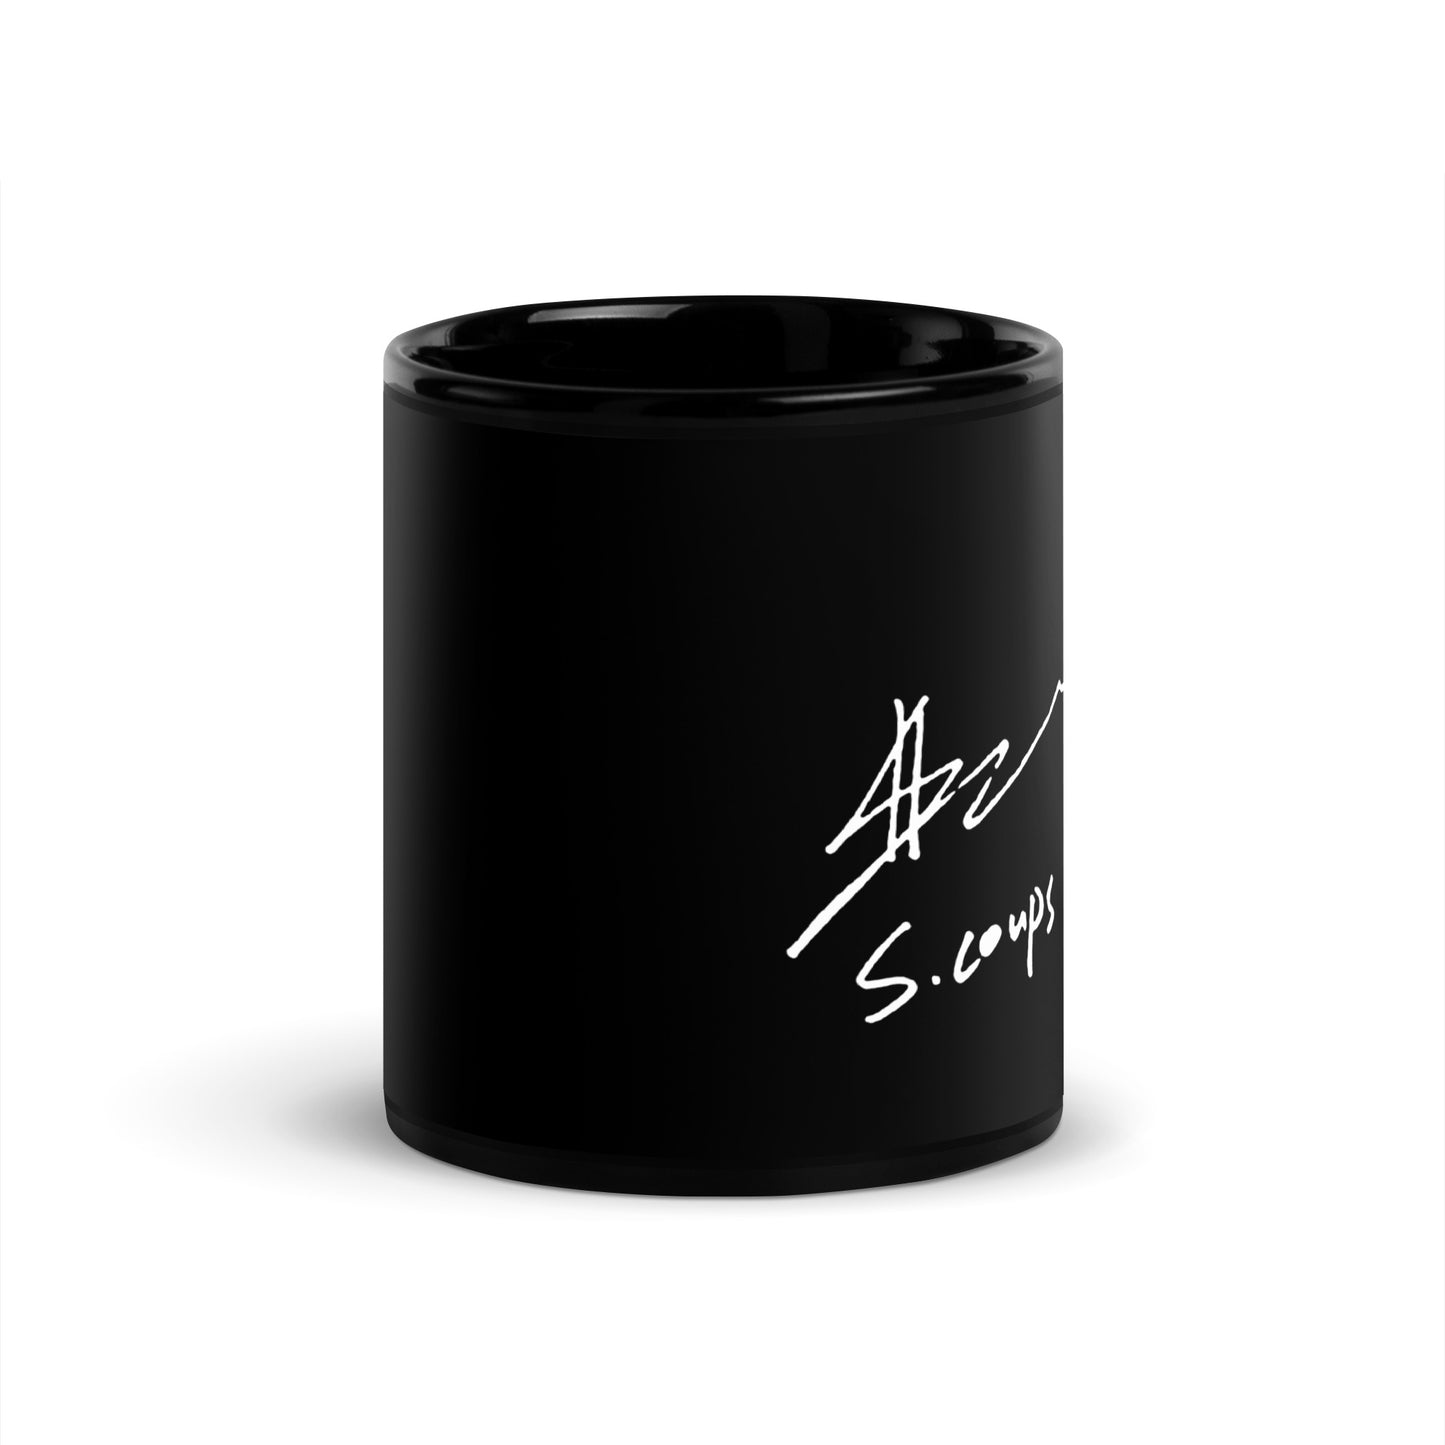 SEVENTEEN S.Coups, Choi Seung Cheol Autograph Ceramic Mug